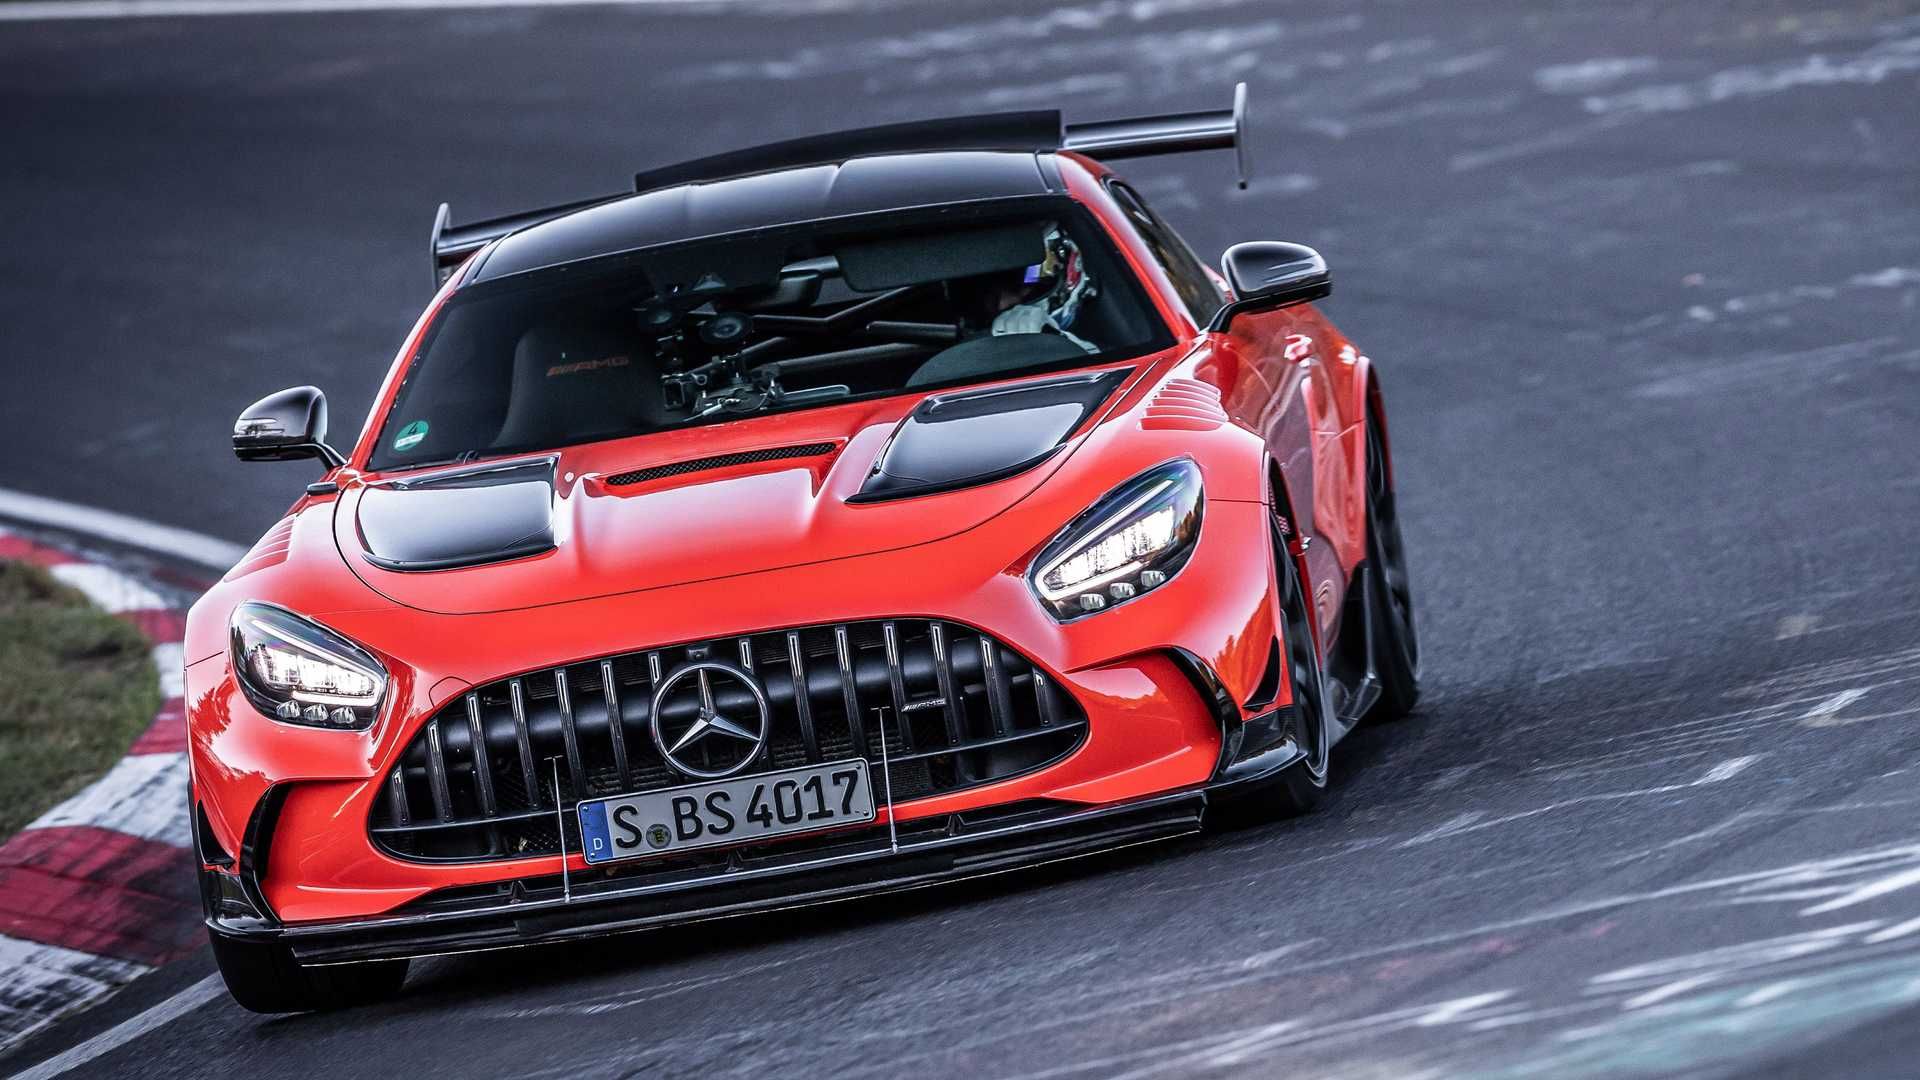 مرجع متخصصين ايران نماي جلو مرسدس آ ام گ جي تي سري سياه / Mercedes-AMG GT Black Series نارنجي رنگ در پيست نوربرگ رينگ در حال پيچيدن